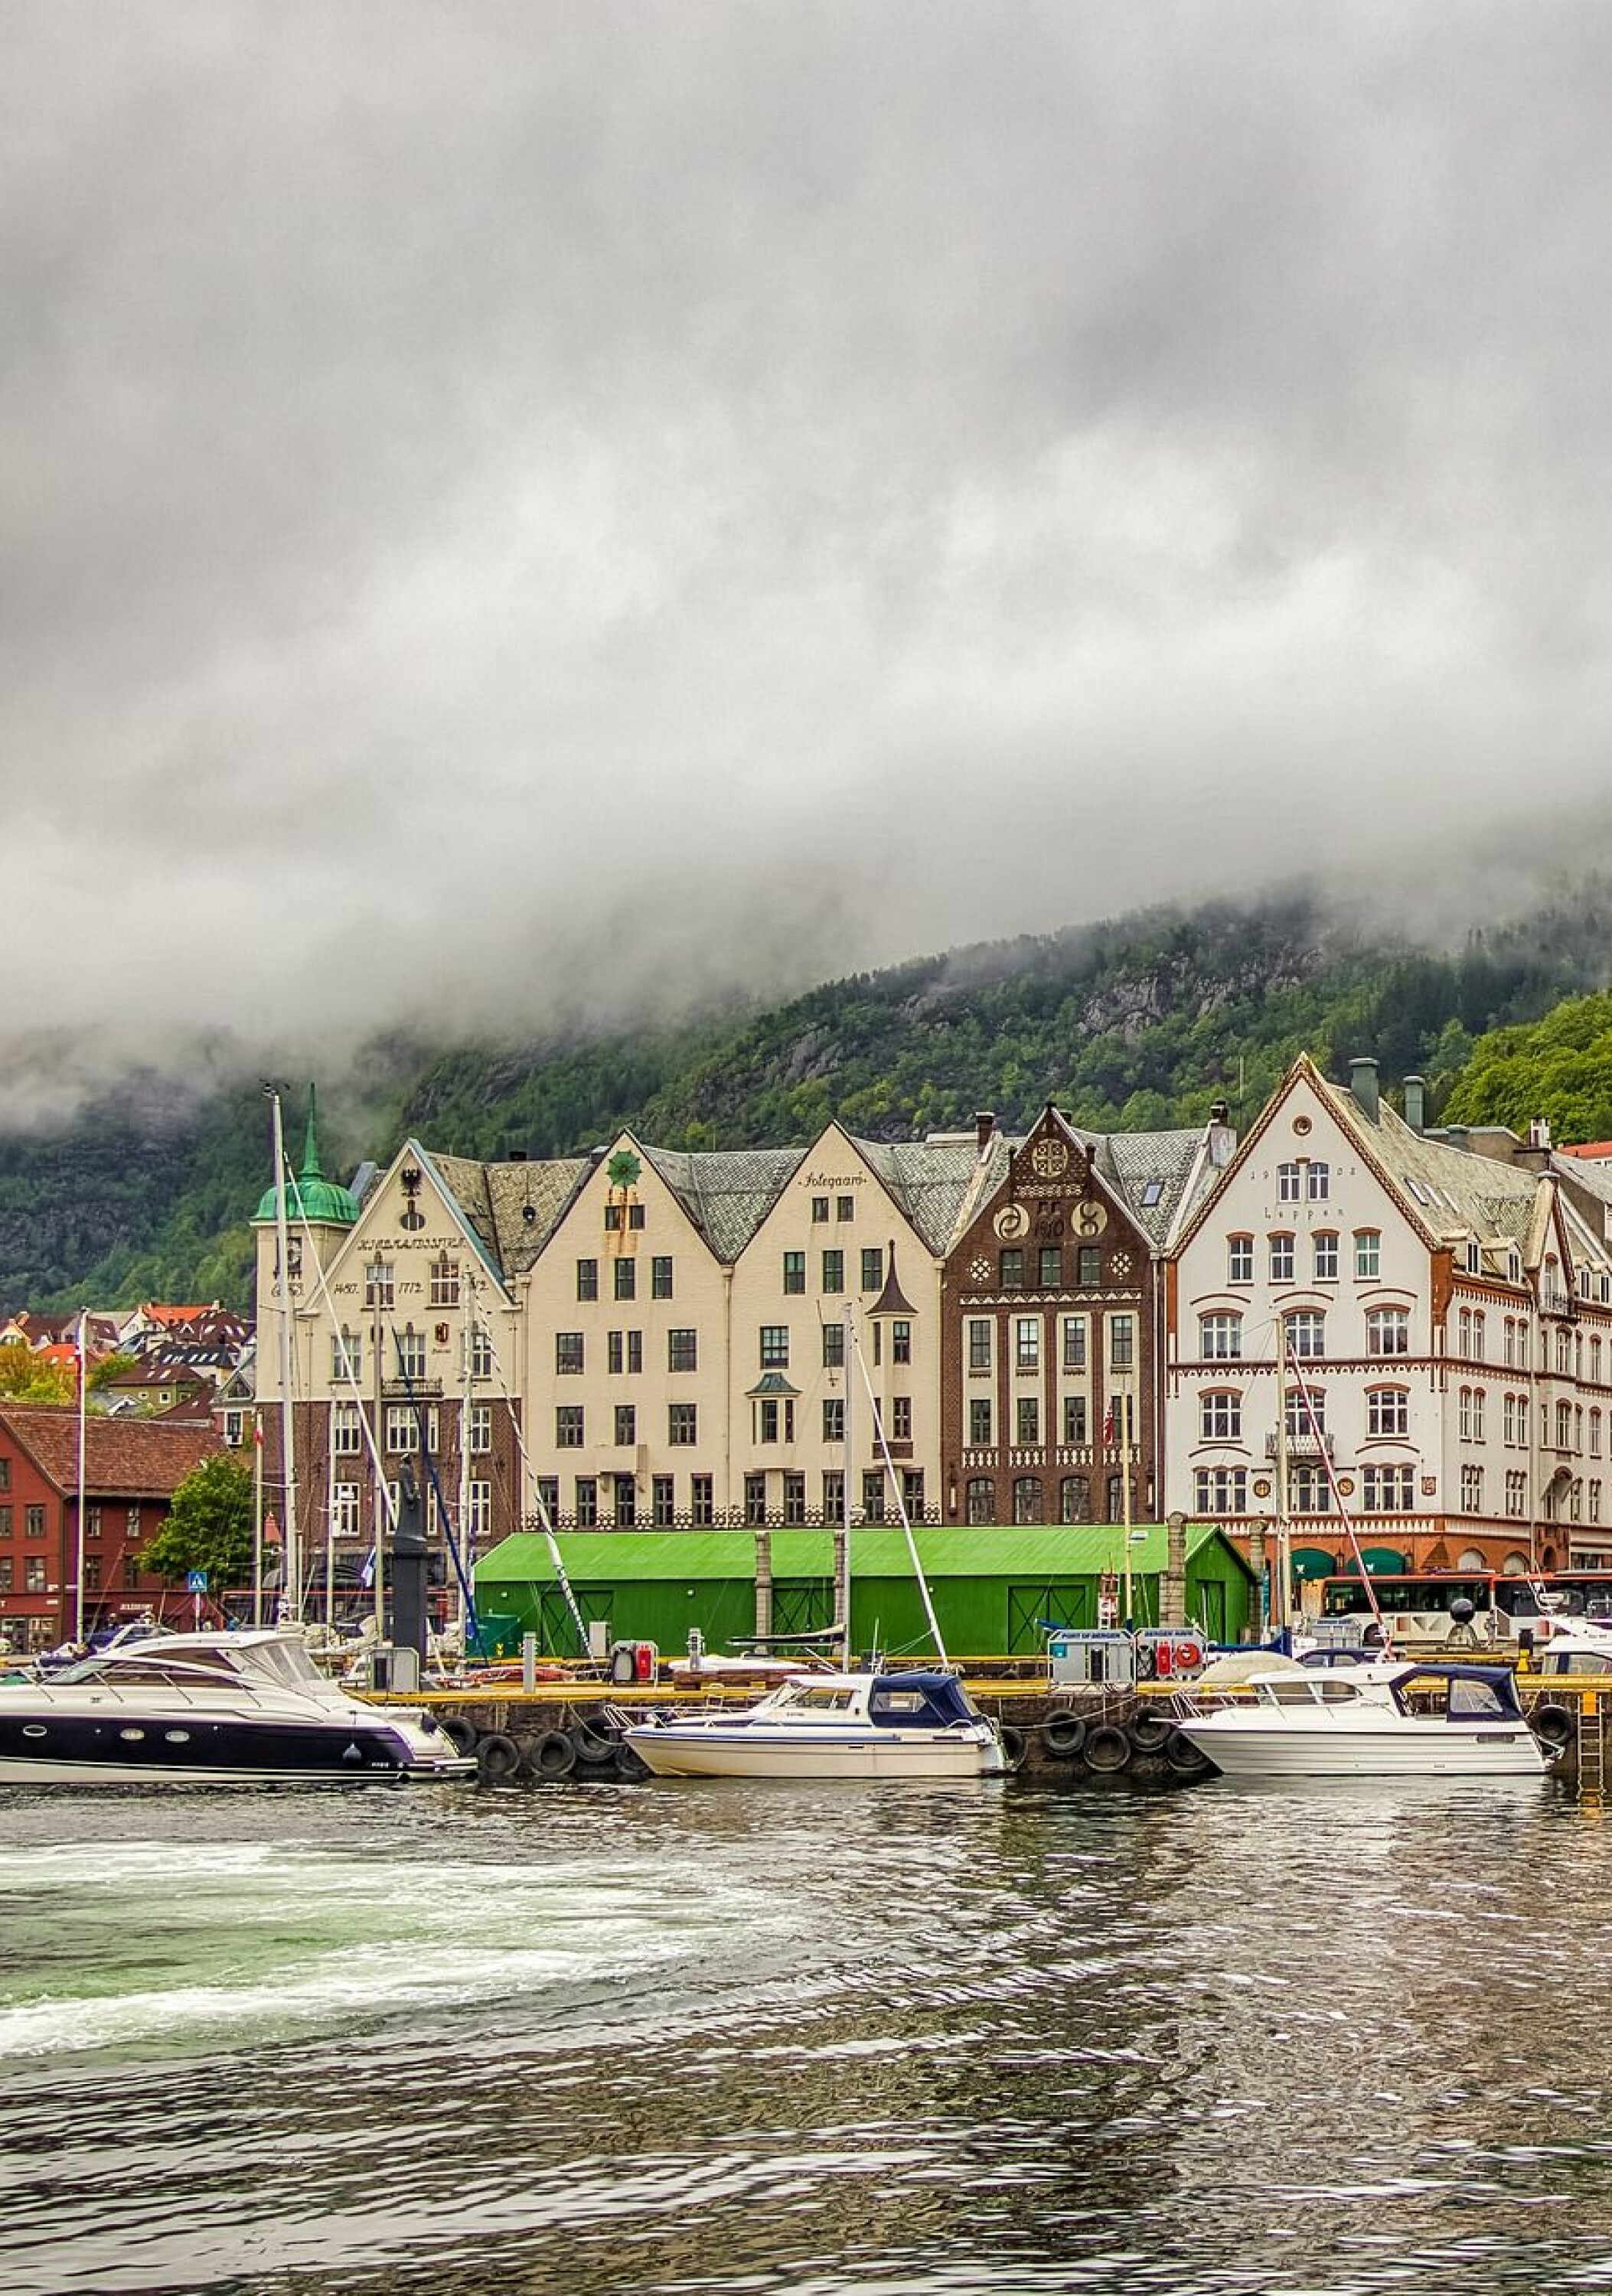 bilde fra norge, foto pixabay